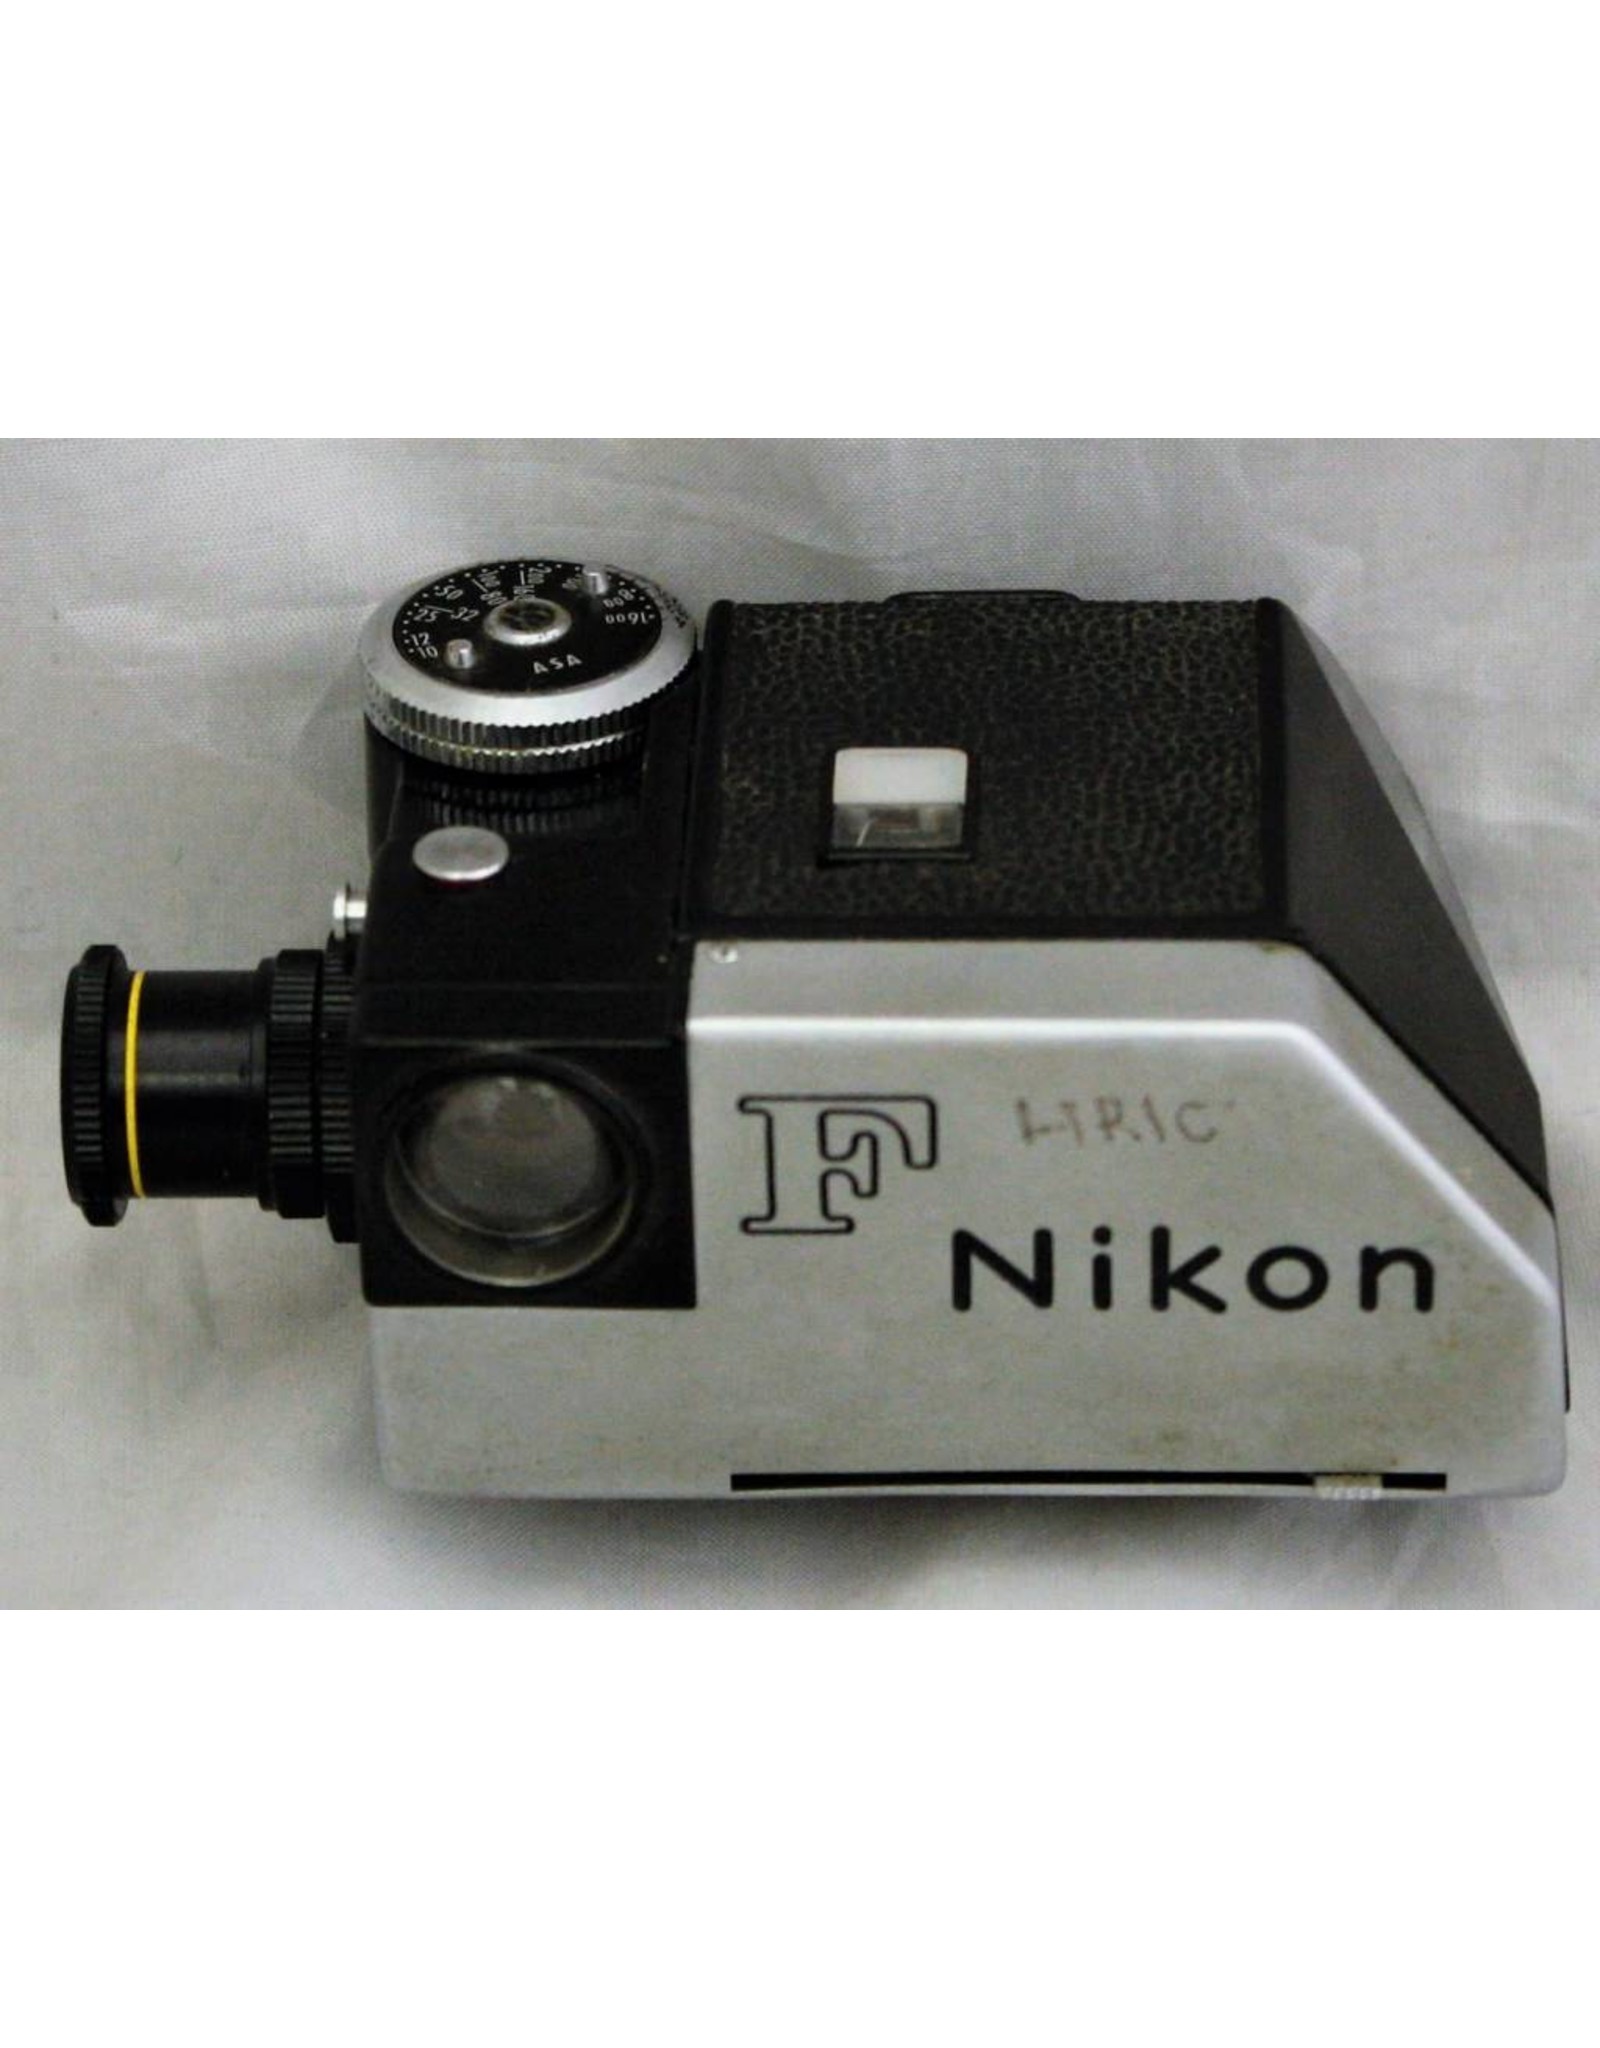 Nikon Nikon F Photomic Prism (2nd Version) Chrome (Meter Not working)